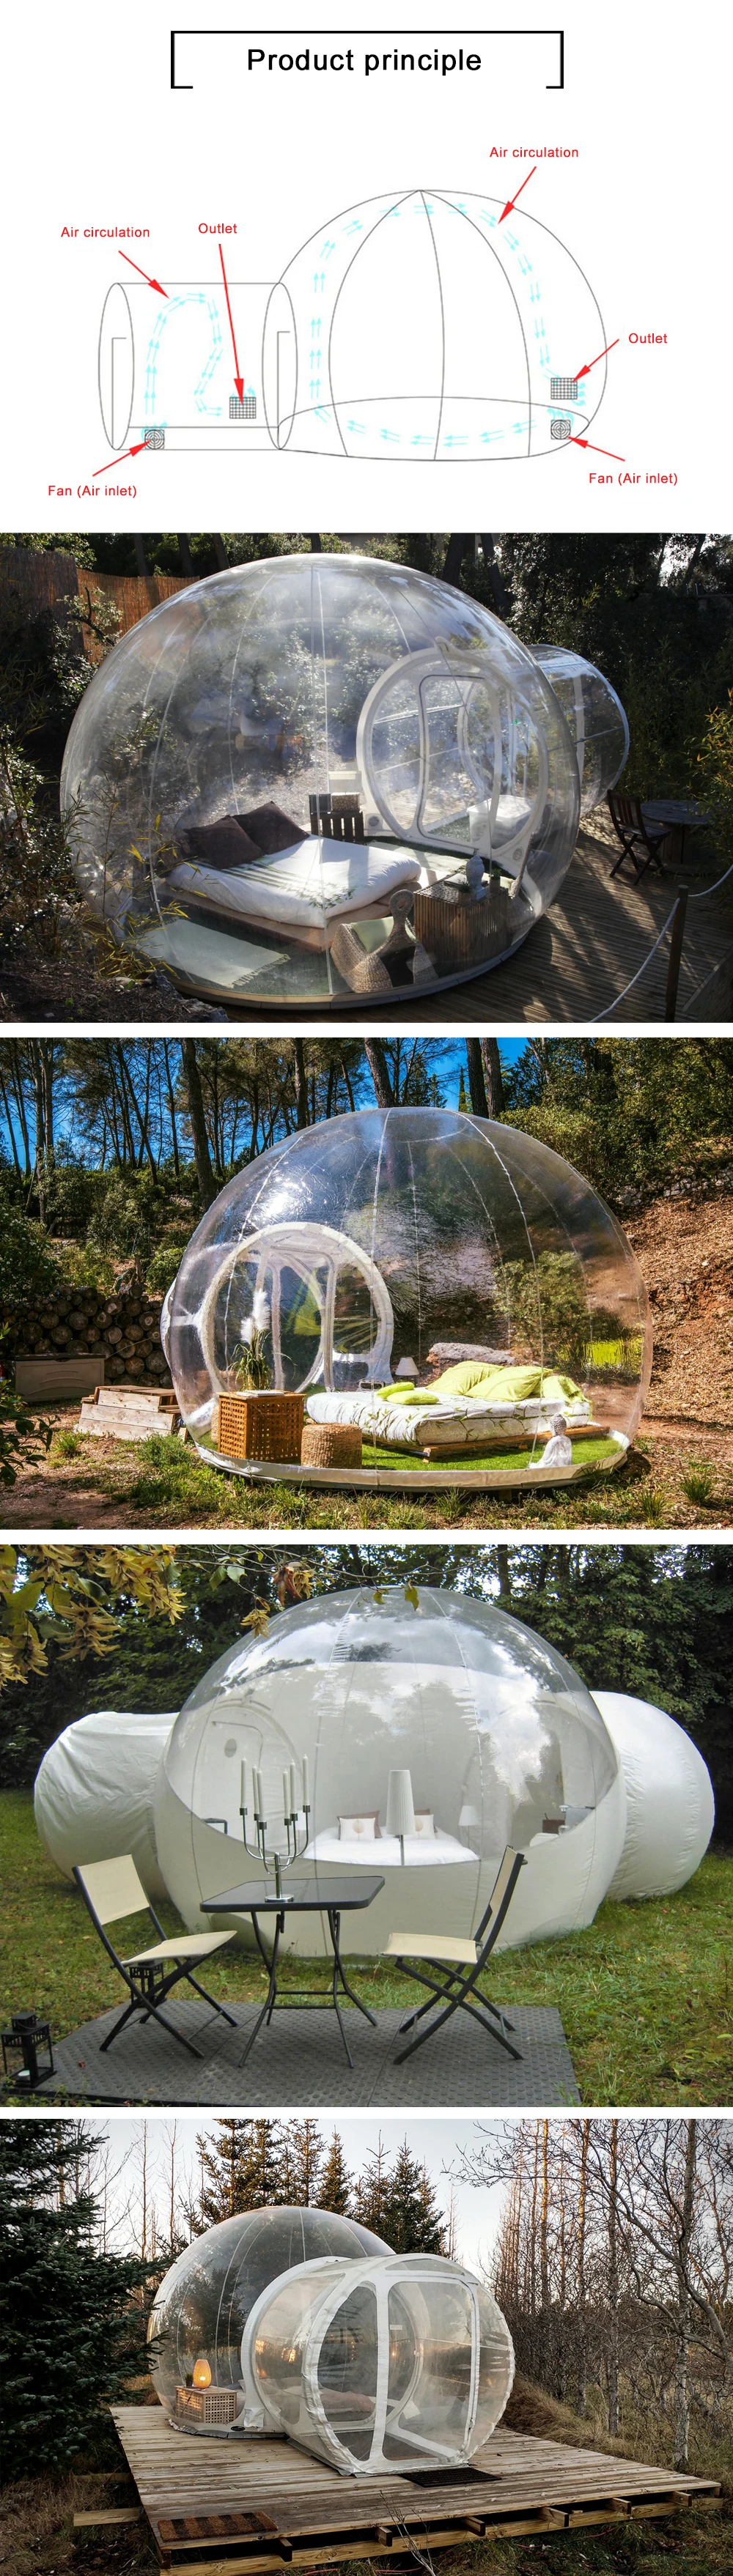 Надувной пузырь дом для кемпинга на открытом воздухе 3 м/4 м/5 м Диаметр надувной пузырь отель красивый ПВХ пузырь надувная купольная палатка сделанная на заказ дешево